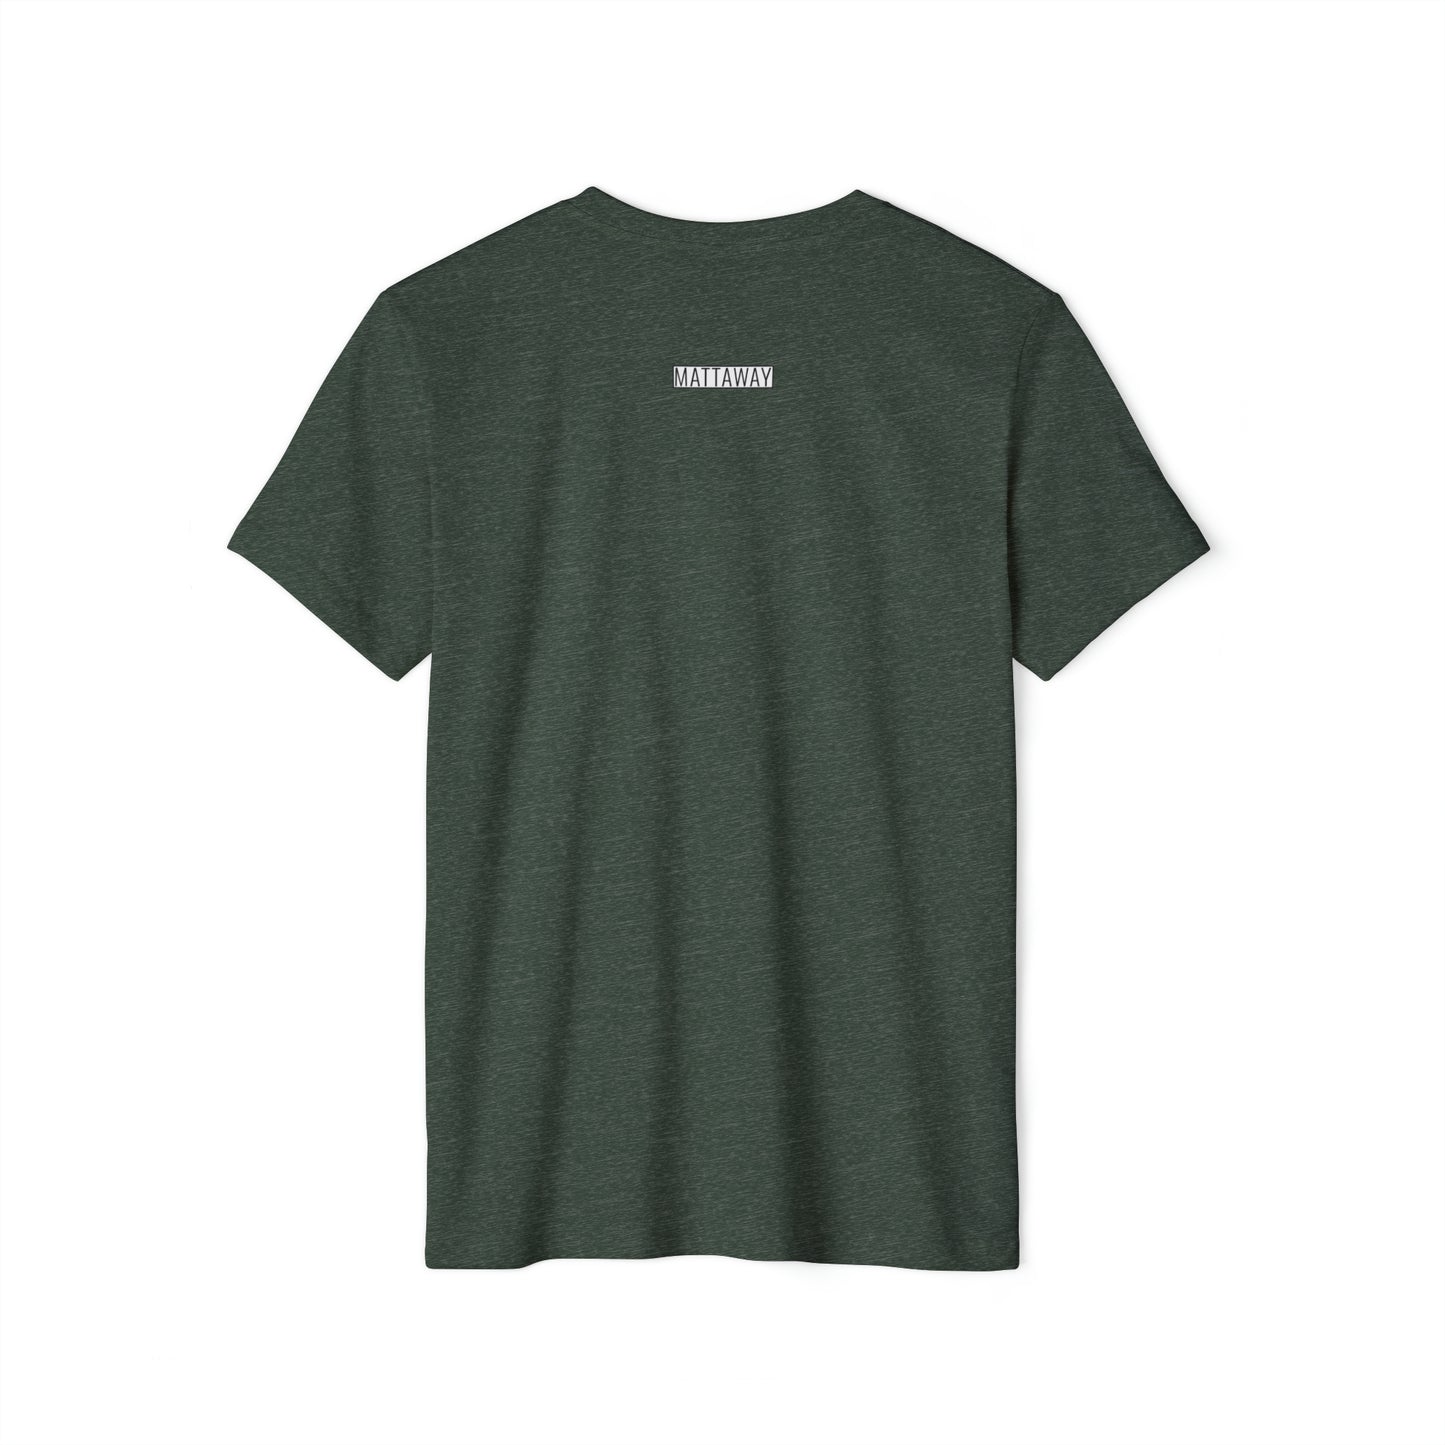 MINIMAL SHAPES 106 - Unisex Recycled Organic T-Shirt